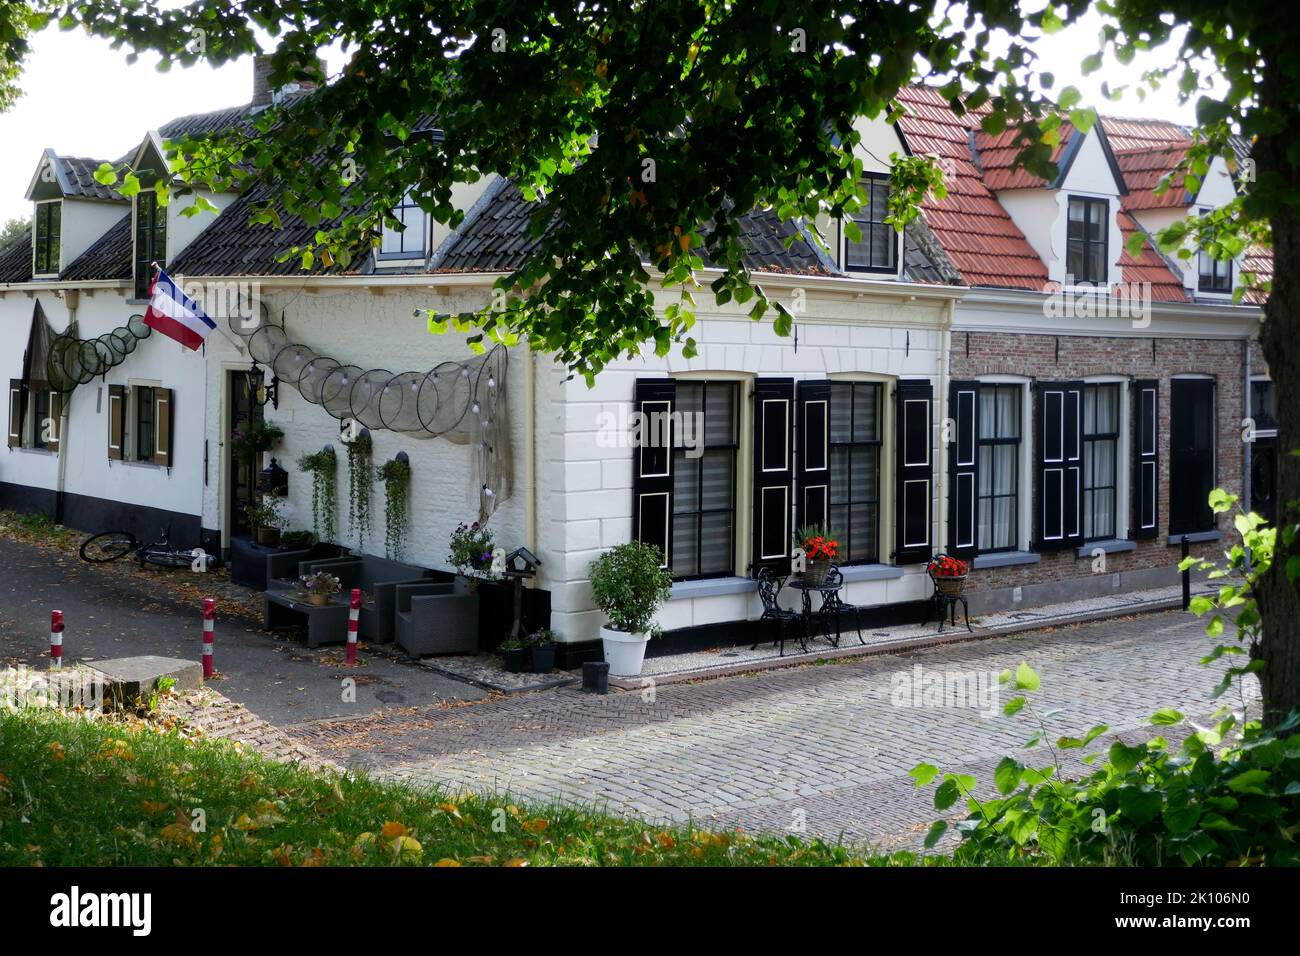 Tipiche case olandesi con tetti in tegole, porte nere e persiane alle finestre. Le reti da pesca mostrano che si tratta di un villaggio storico di pescatori. Foto Stock